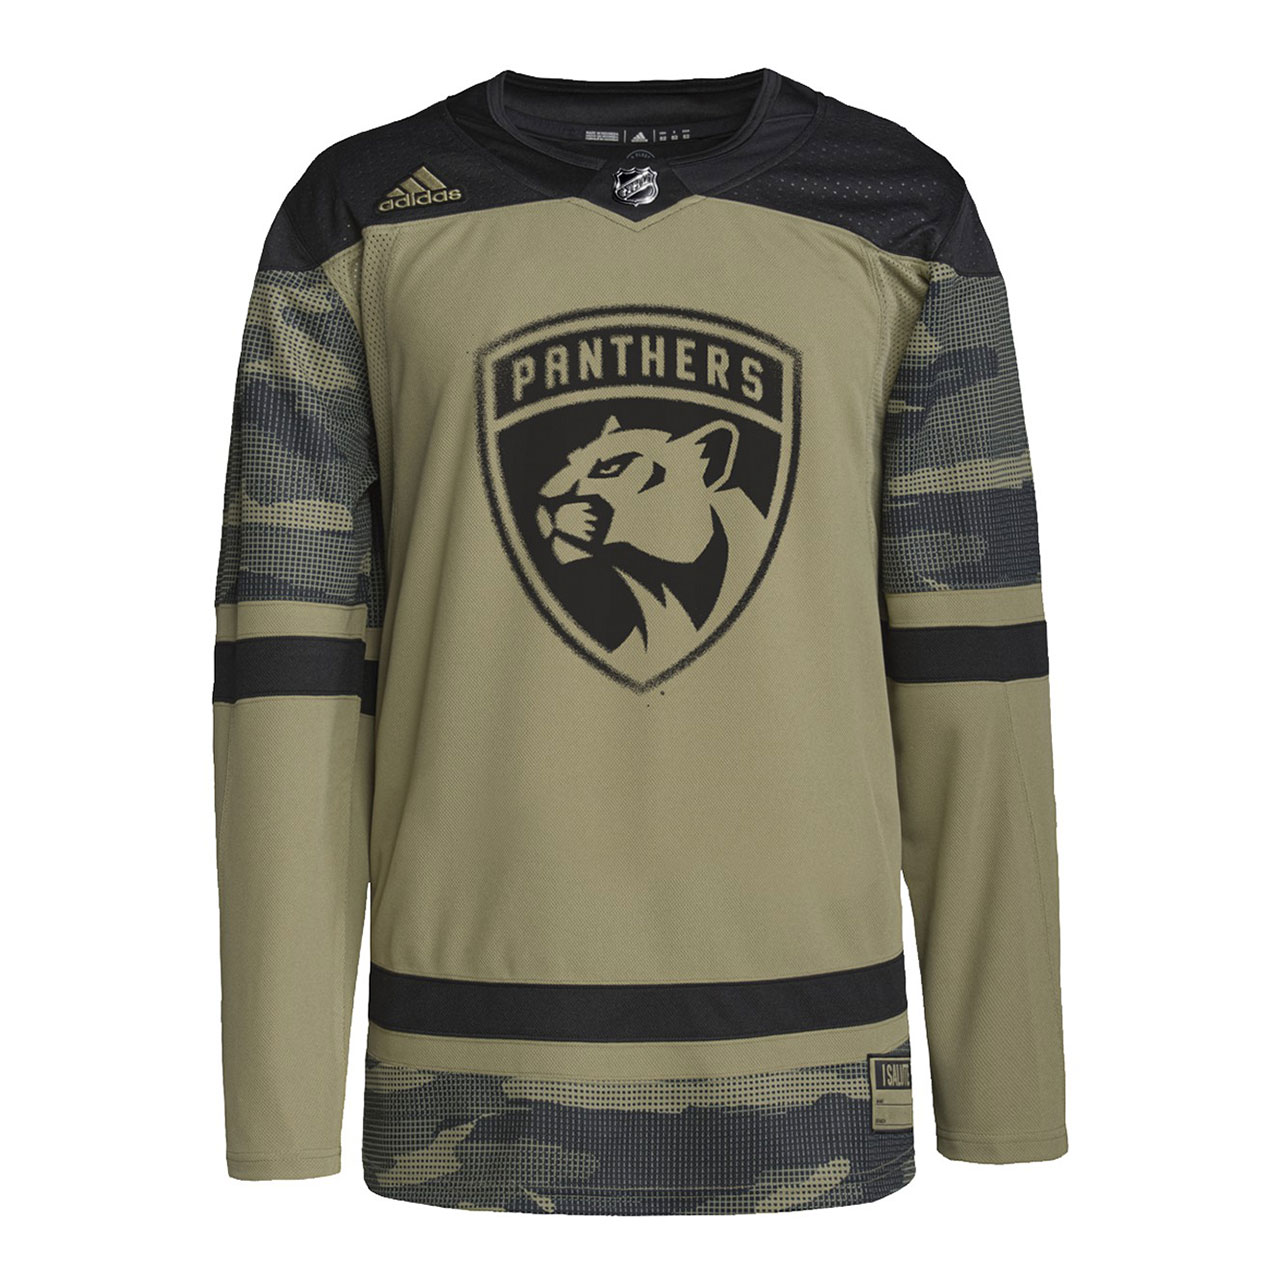 Matthew Tkachuk Florida Panthers Adidas Primegreen Authentic NHL Hockey Jersey - Home / M/50